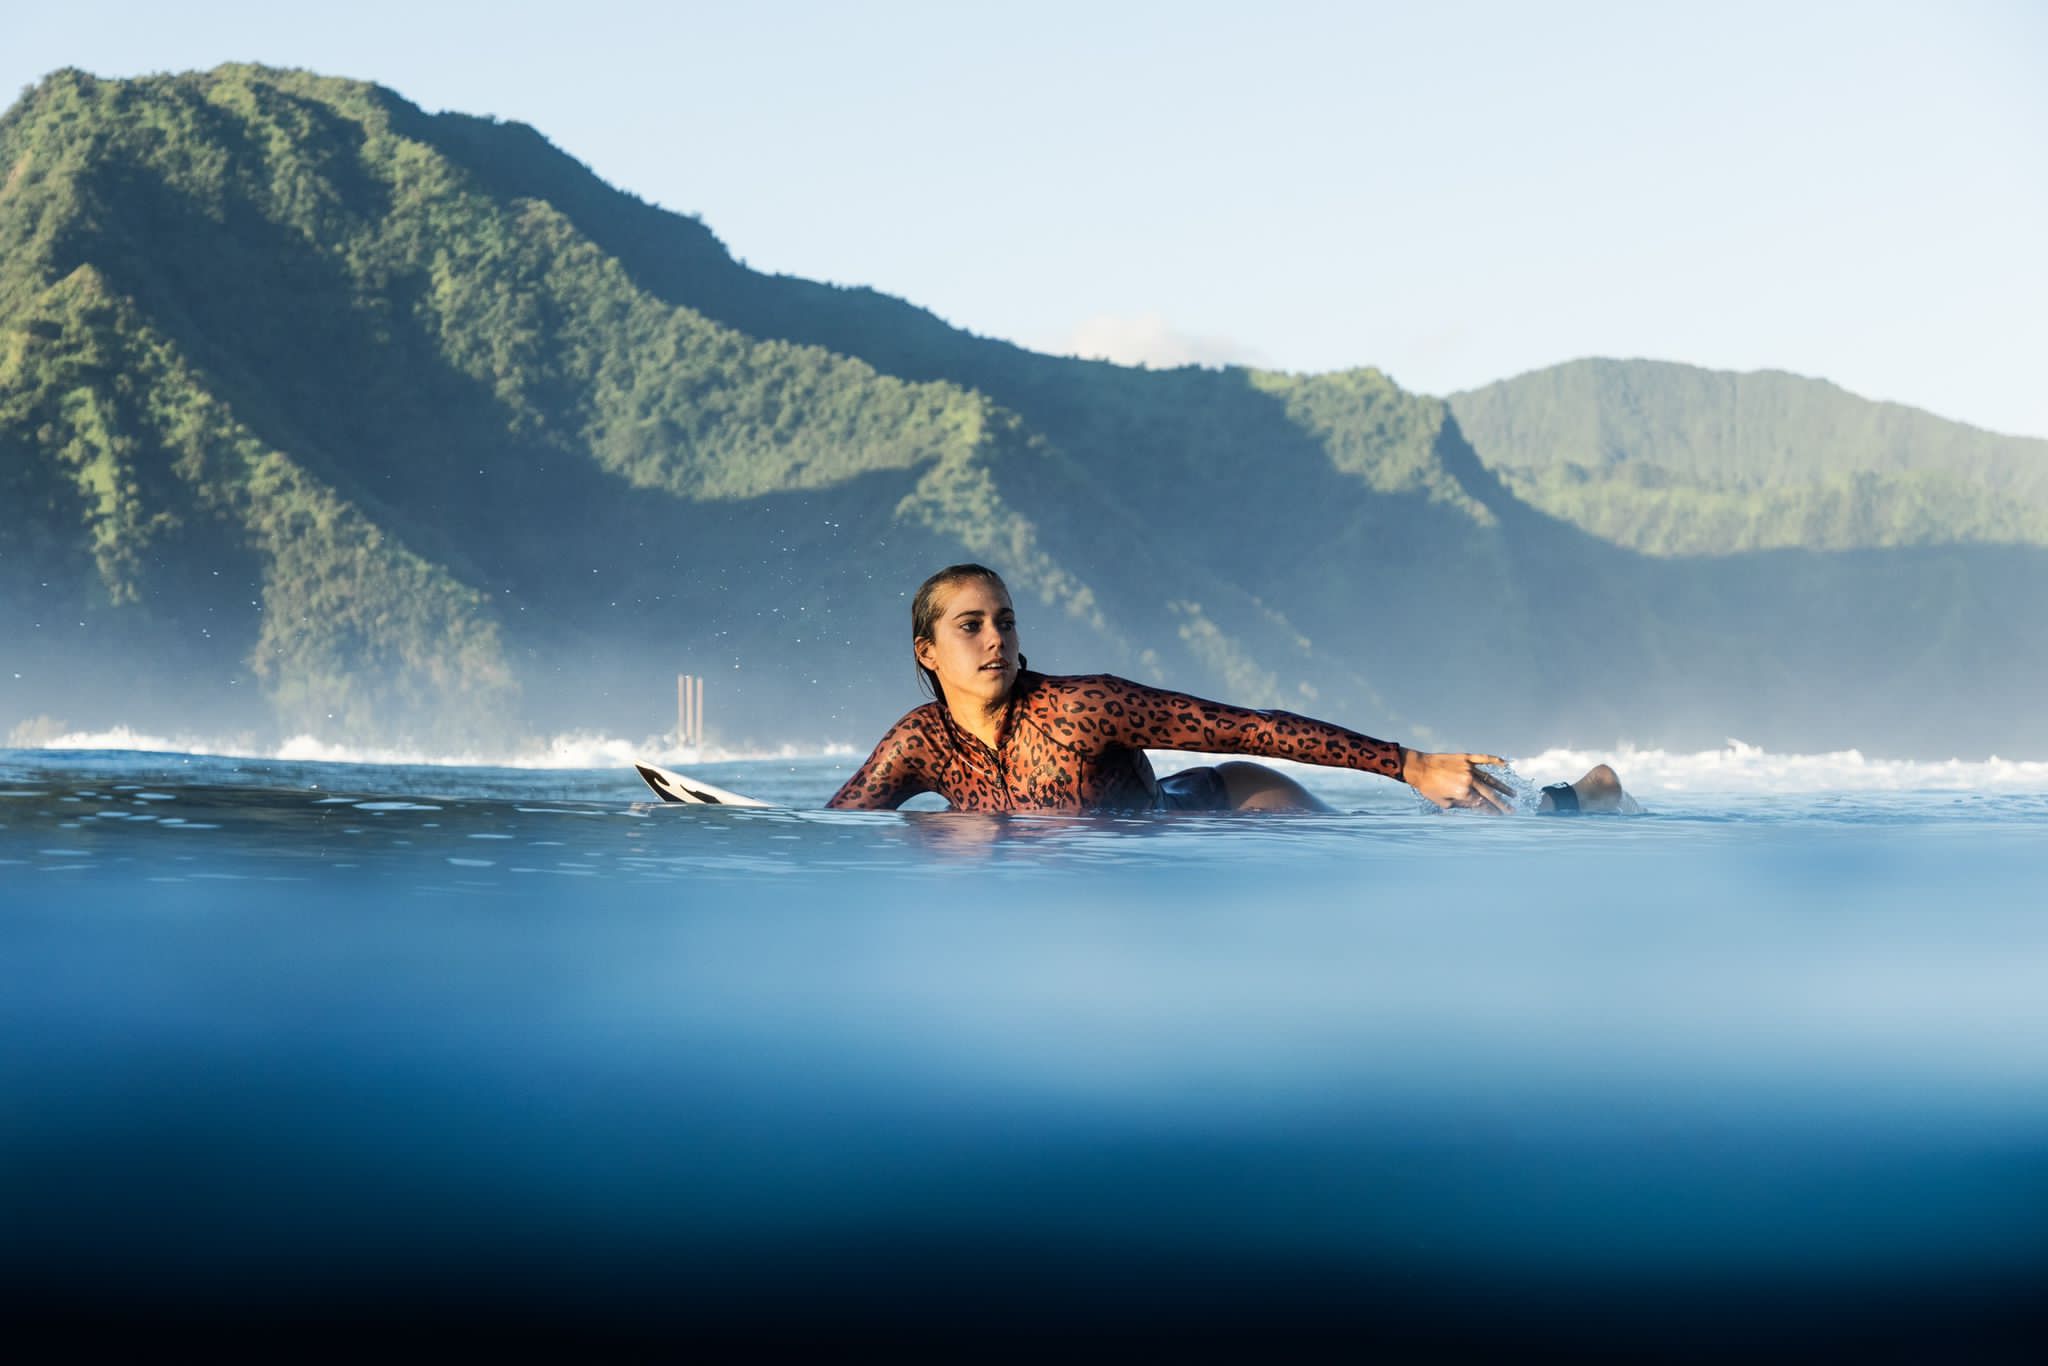 À Teahupo’o, où elle surfe depuis l’âge de 12 ans (Crédit : Guillaume Arrieta).